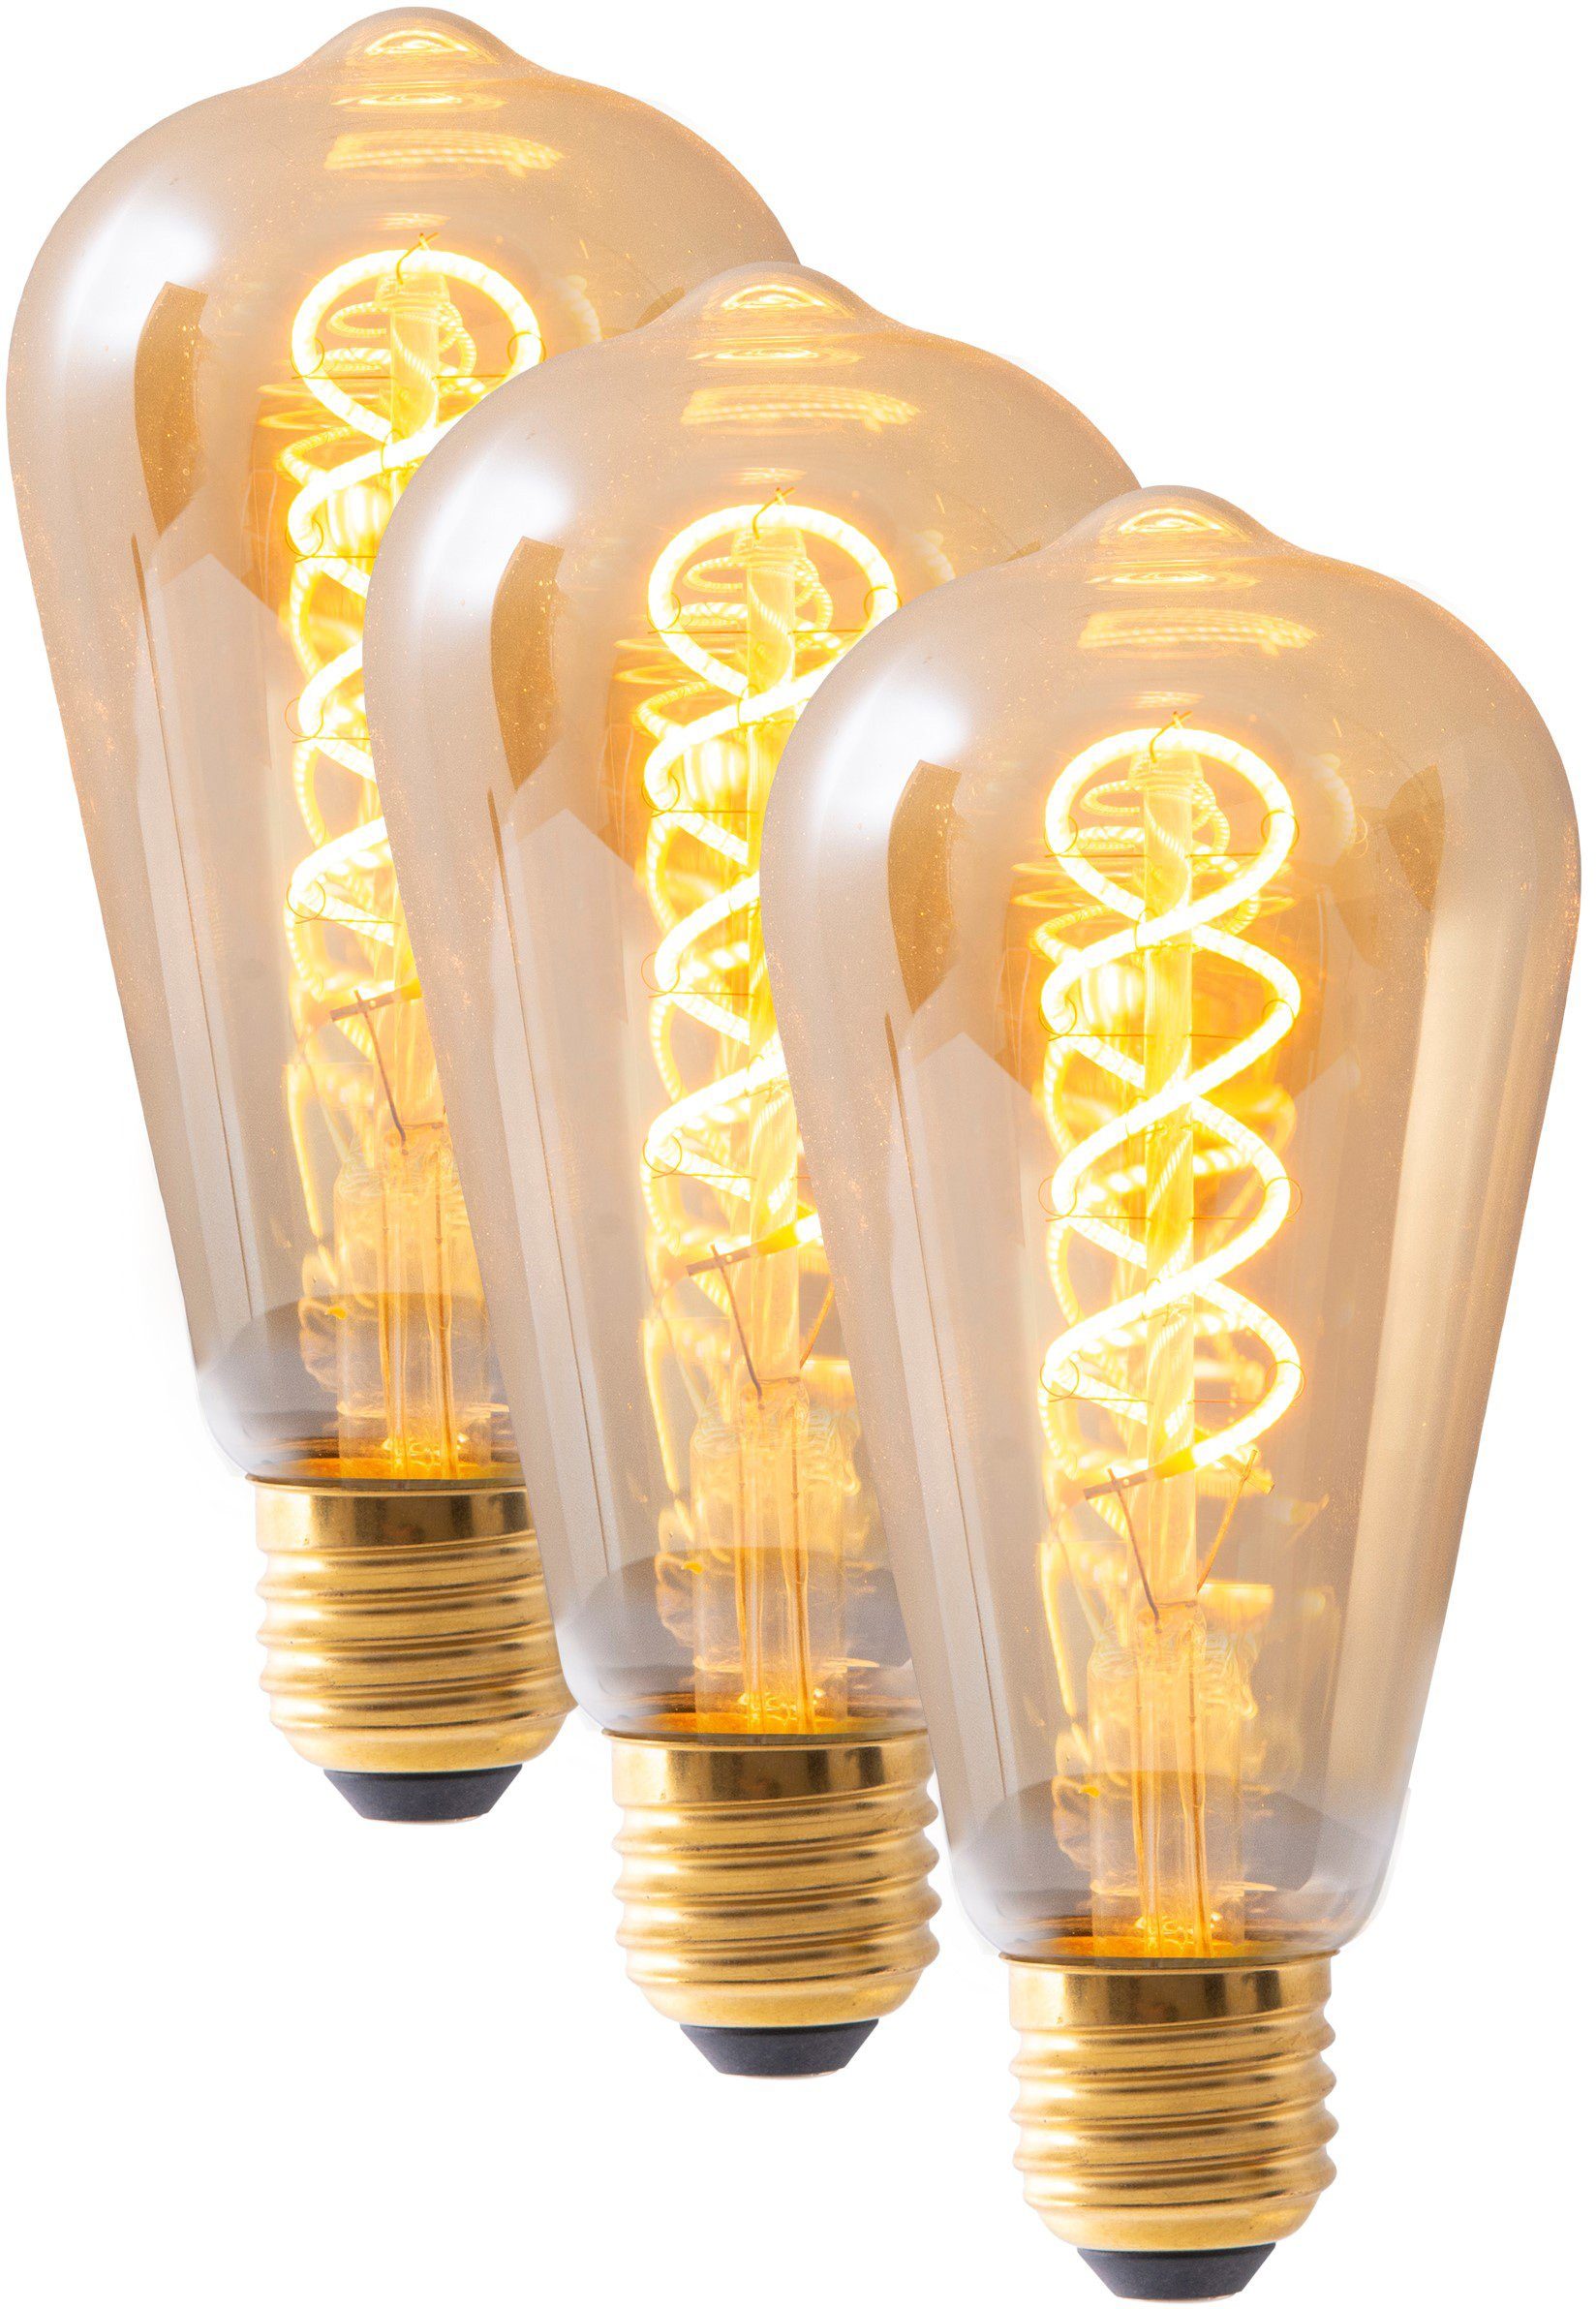 näve »Filament« LED-Leuchtmittel, E27, 3 Stück, Warmweiß, dimmbar, Set - 3  Stück, amberfarben online kaufen | OTTO